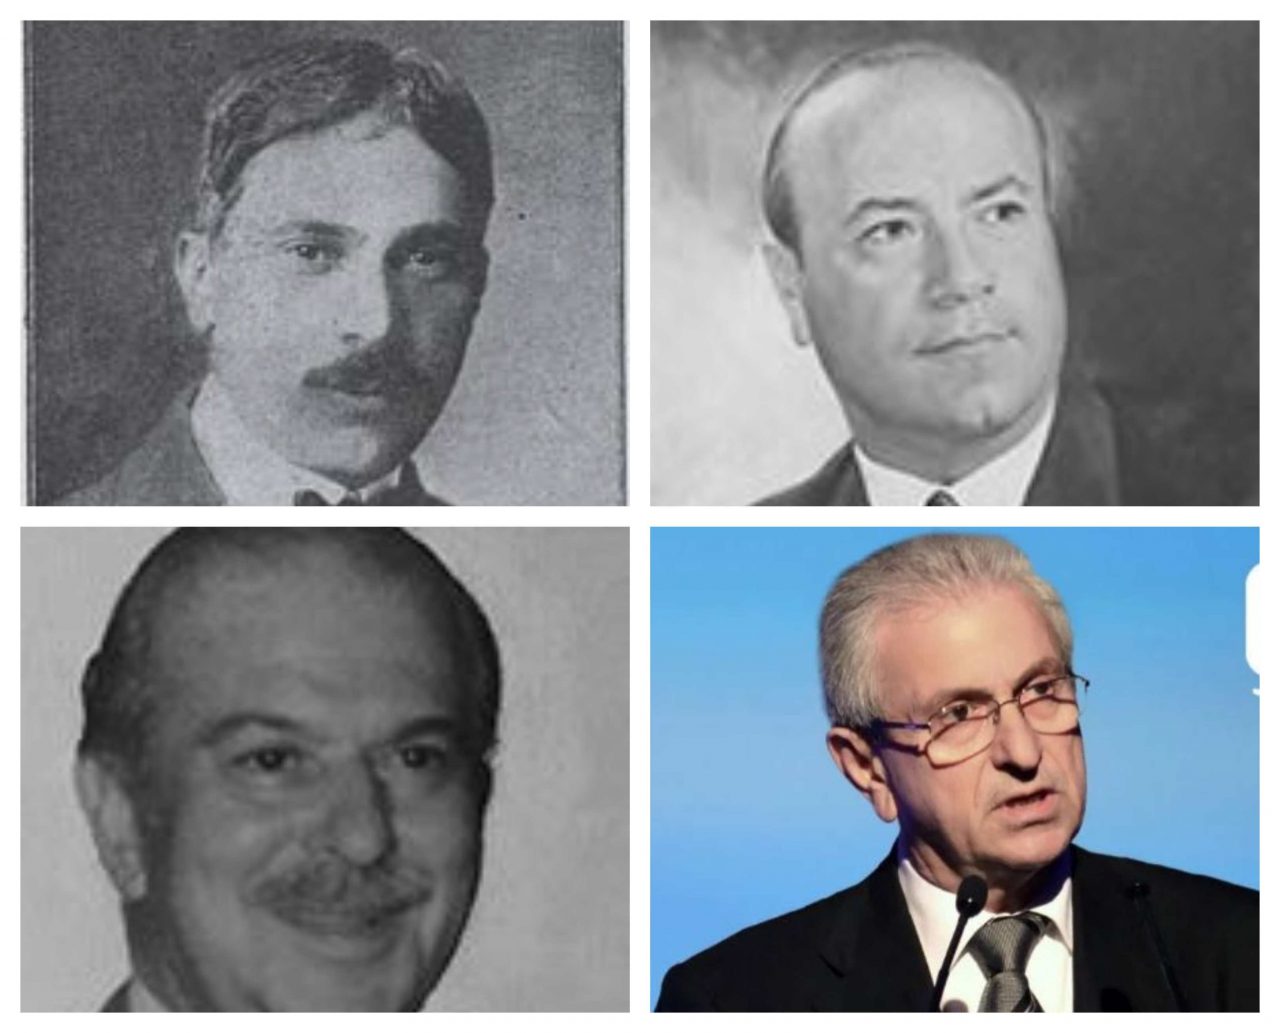 Οι πρόεδροι της Ένωσης Ελλήνων Εφοπλιστών: Από τον Βενιζελικό Λεωνίδα Εμπειρίκο στον Στρατή Ανδρεάδη και από τον Αντώνη Χανδρή στον Θεόδωρο Βενιάμη